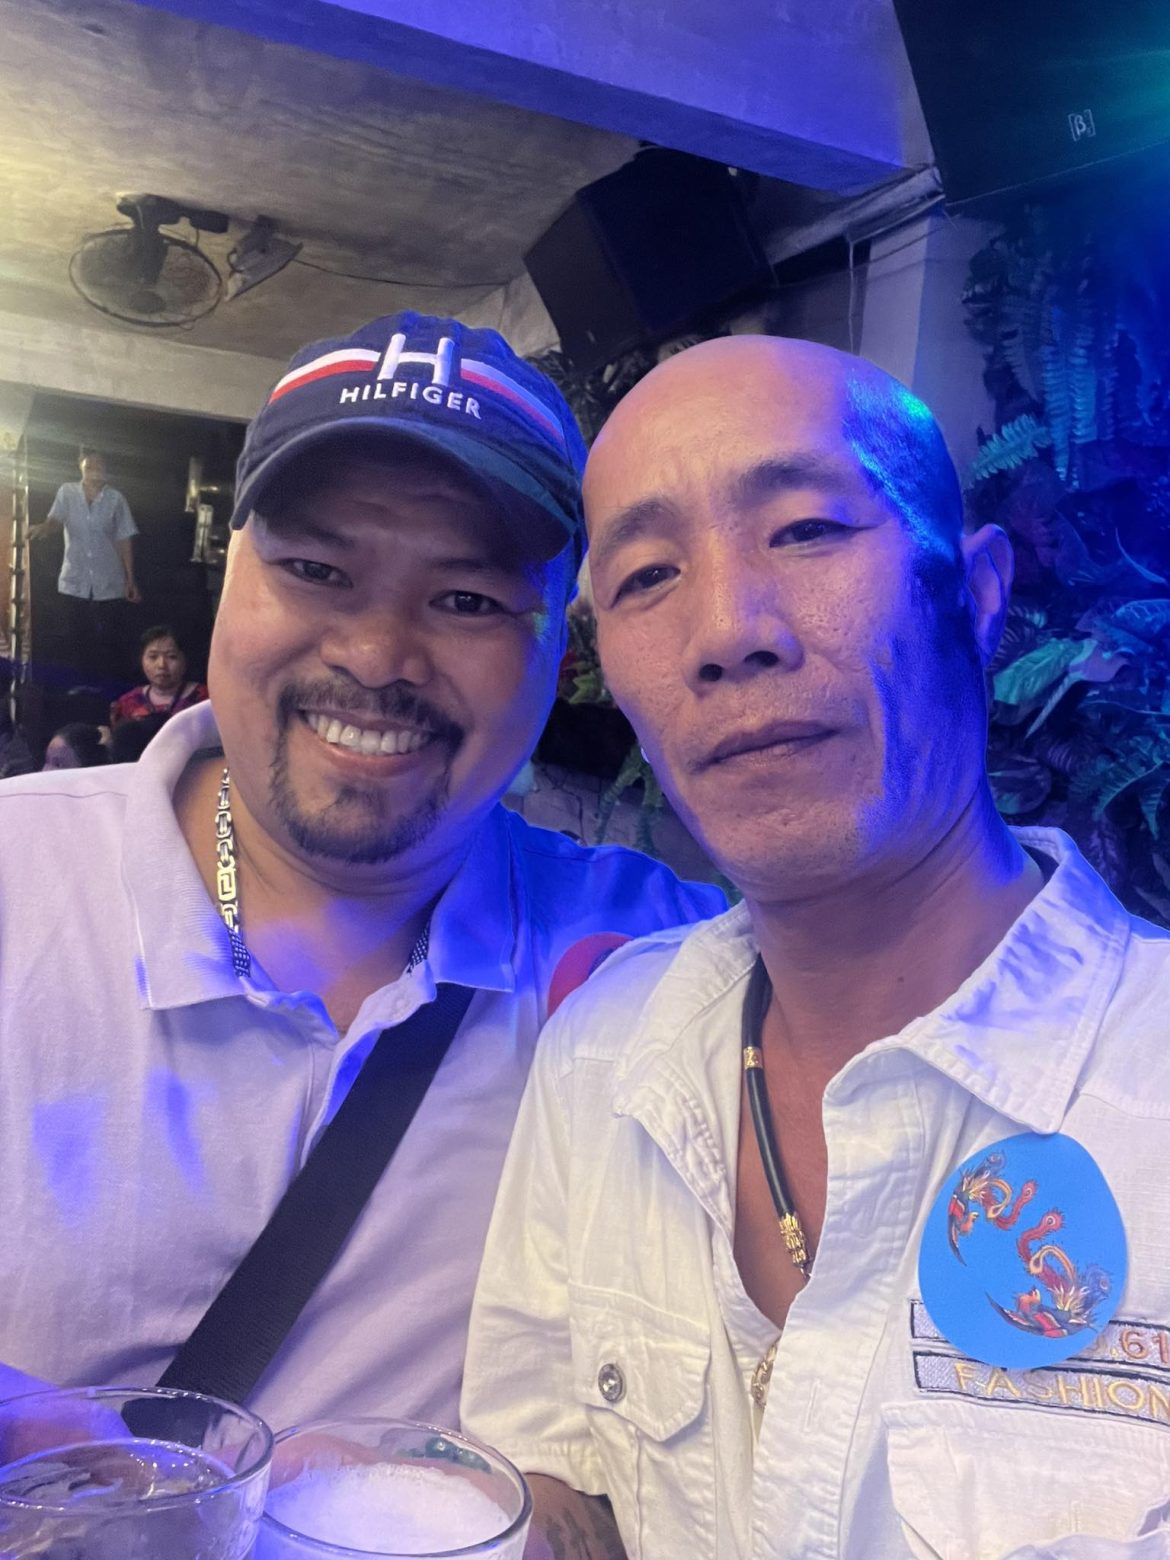 Anh Phạm Quốc Huy: ” Chuyên Cung Cấp Nhạc Cụ Secondhand Nhật Bản Hàng Đầu Tại Sài Gòn”